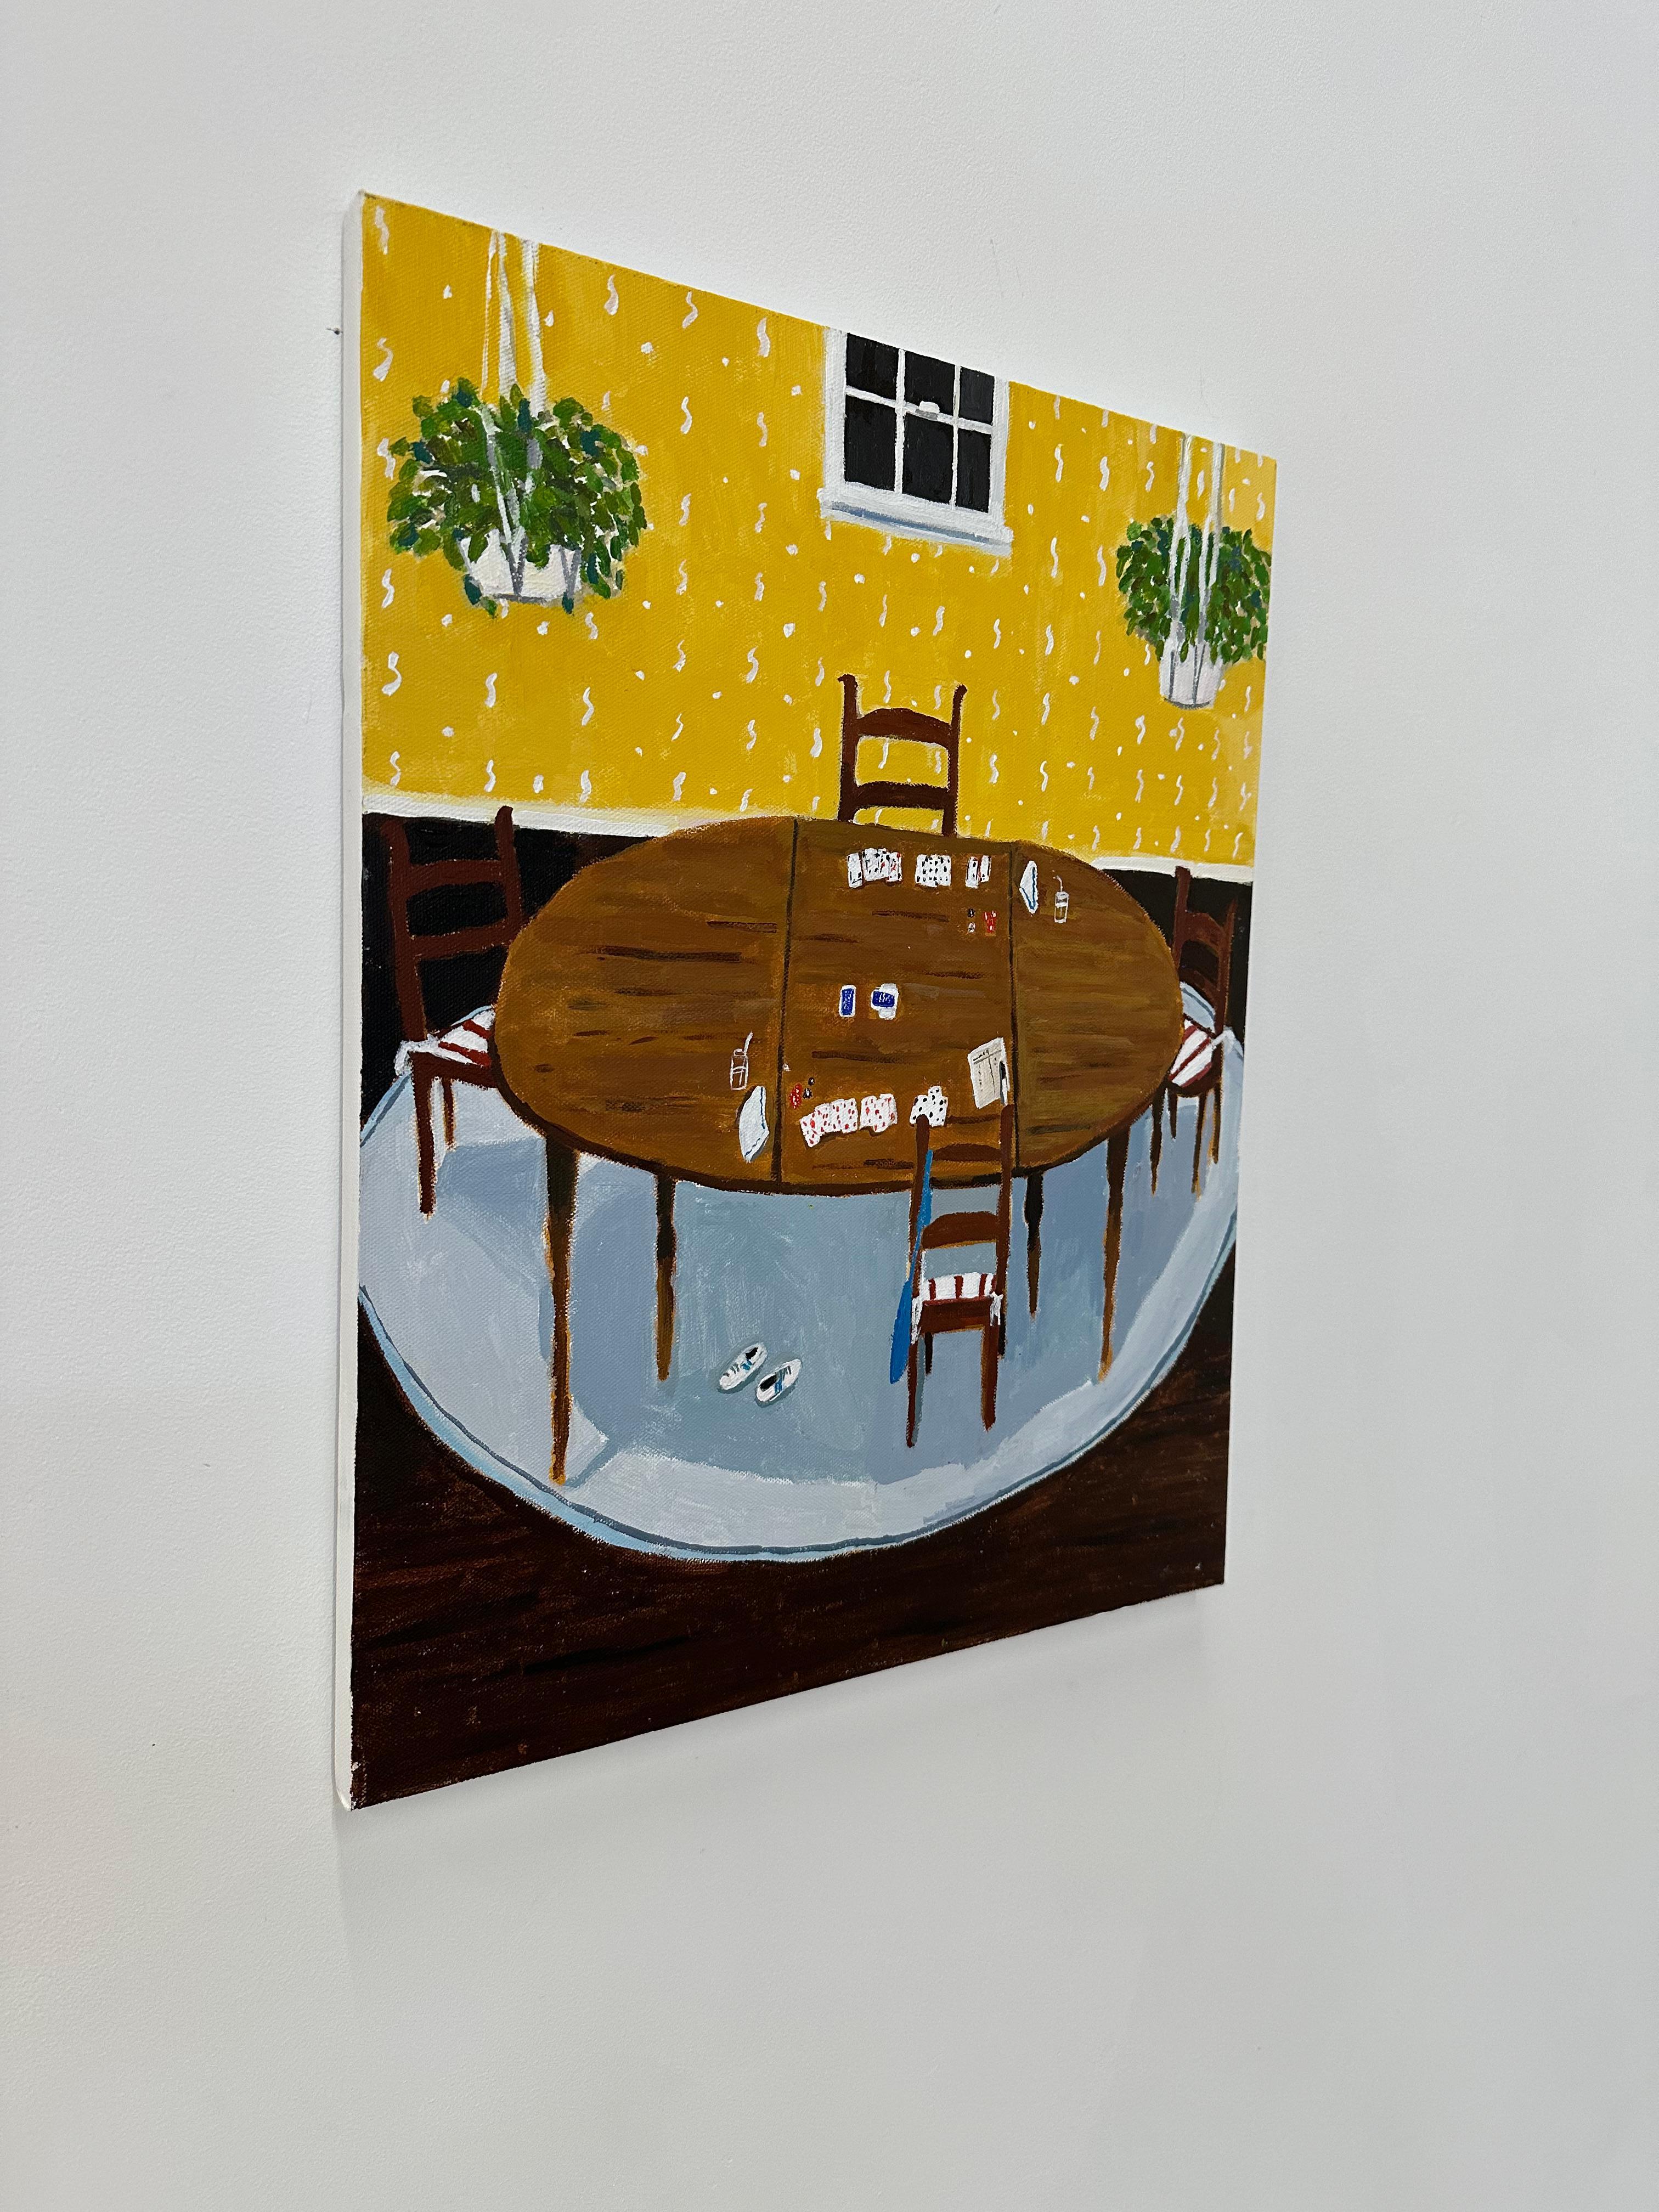 Gin-Spiel im gelben Raum, Esszimmer, Holztisch, Stühle, Kartenspiel, grüne Pflanzen (Zeitgenössisch), Painting, von Polly Shindler